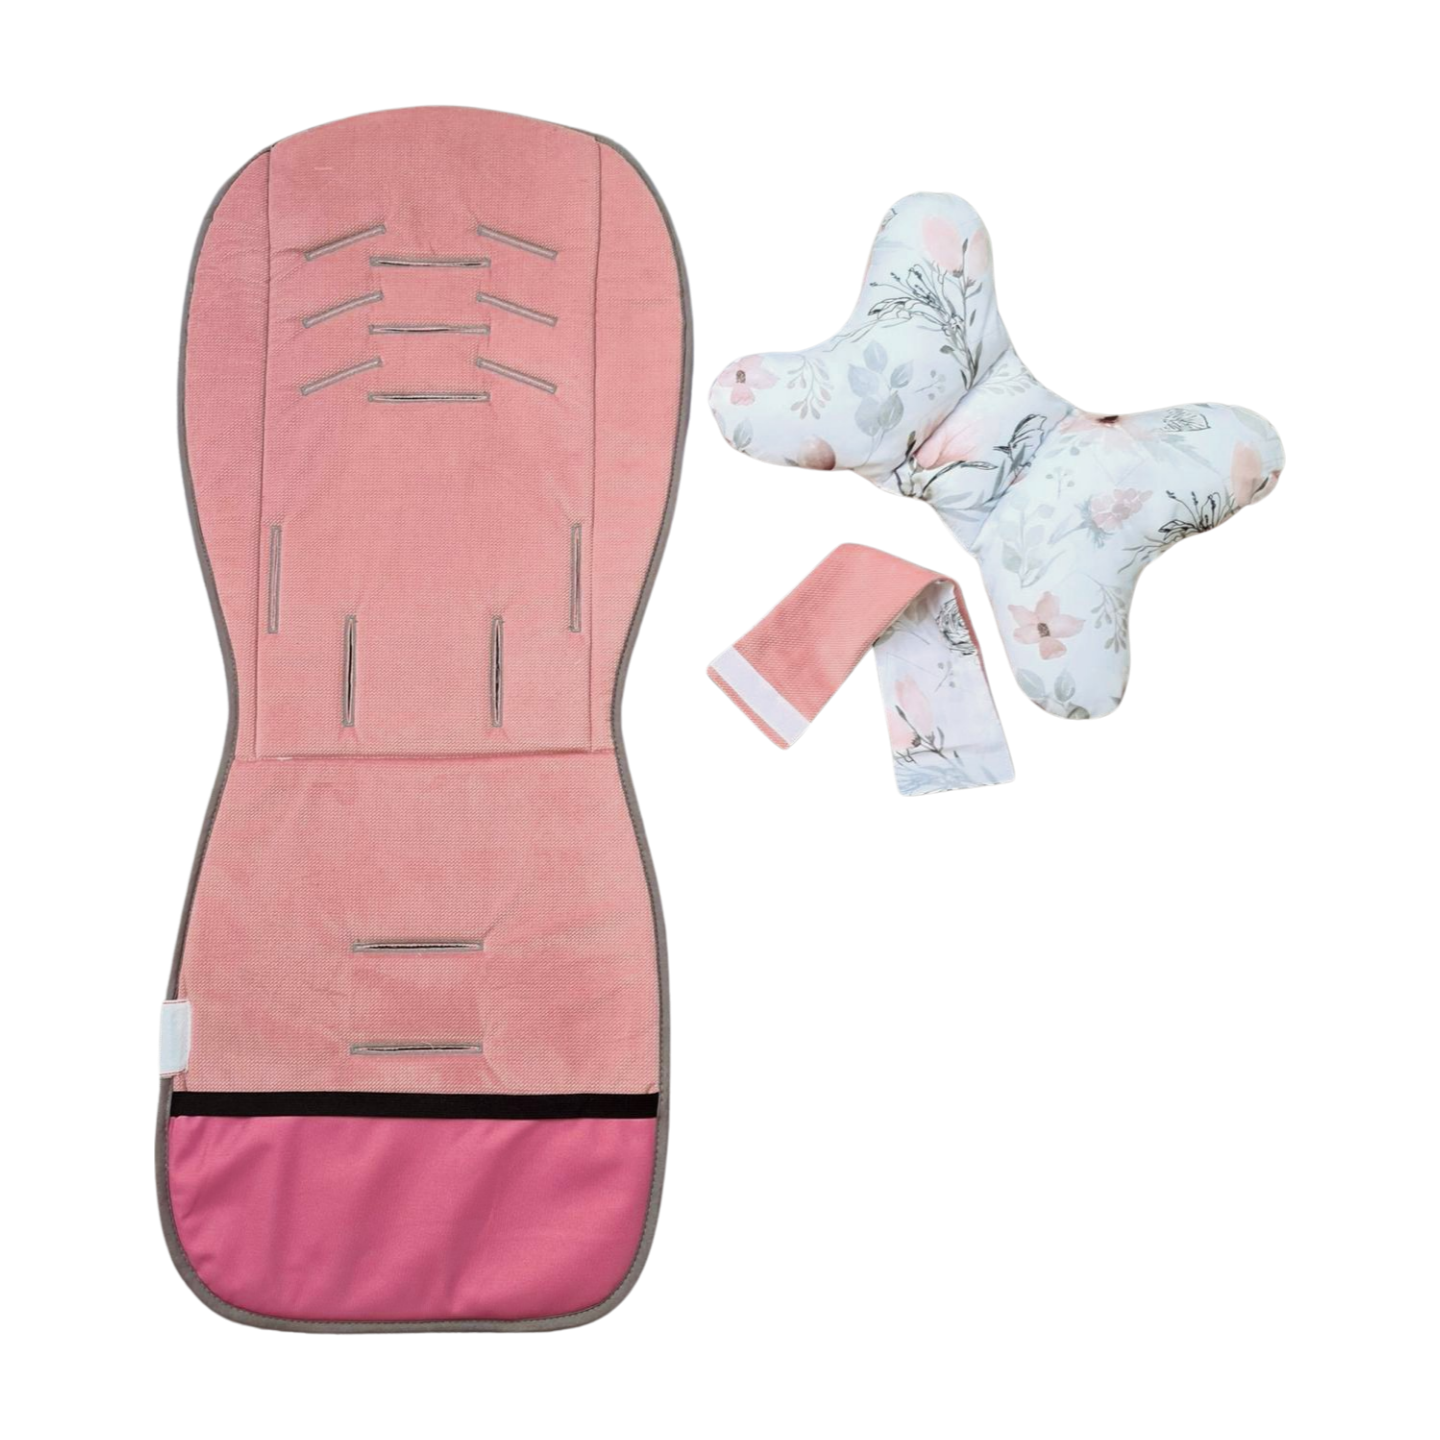 warm stroller liner, cooling stroller seat liner, stroller accessories, pink liner